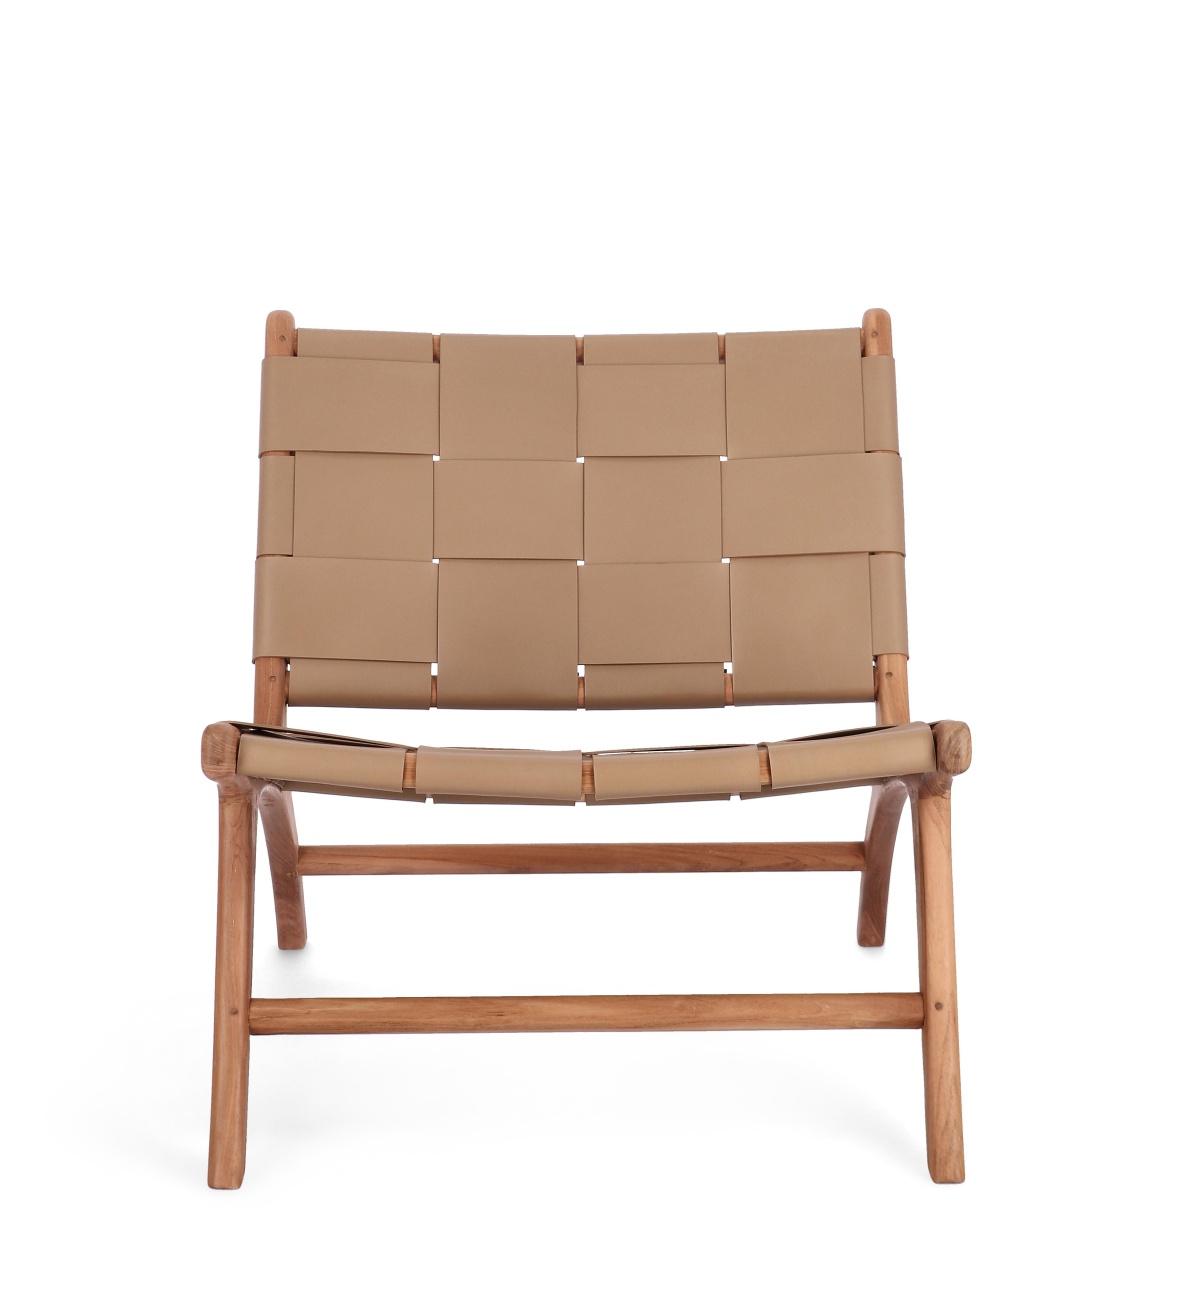 Der Sessel Joanna überzeugt mit seinem modernen Stil. Gefertigt wurde er aus Leder, welches einen Taupe Farbton besitzt. Das Gestell ist aus Teakholz und hat eine natürliche Farbe. Der Sessel besitzt eine Sitzhöhe von 39 cm.